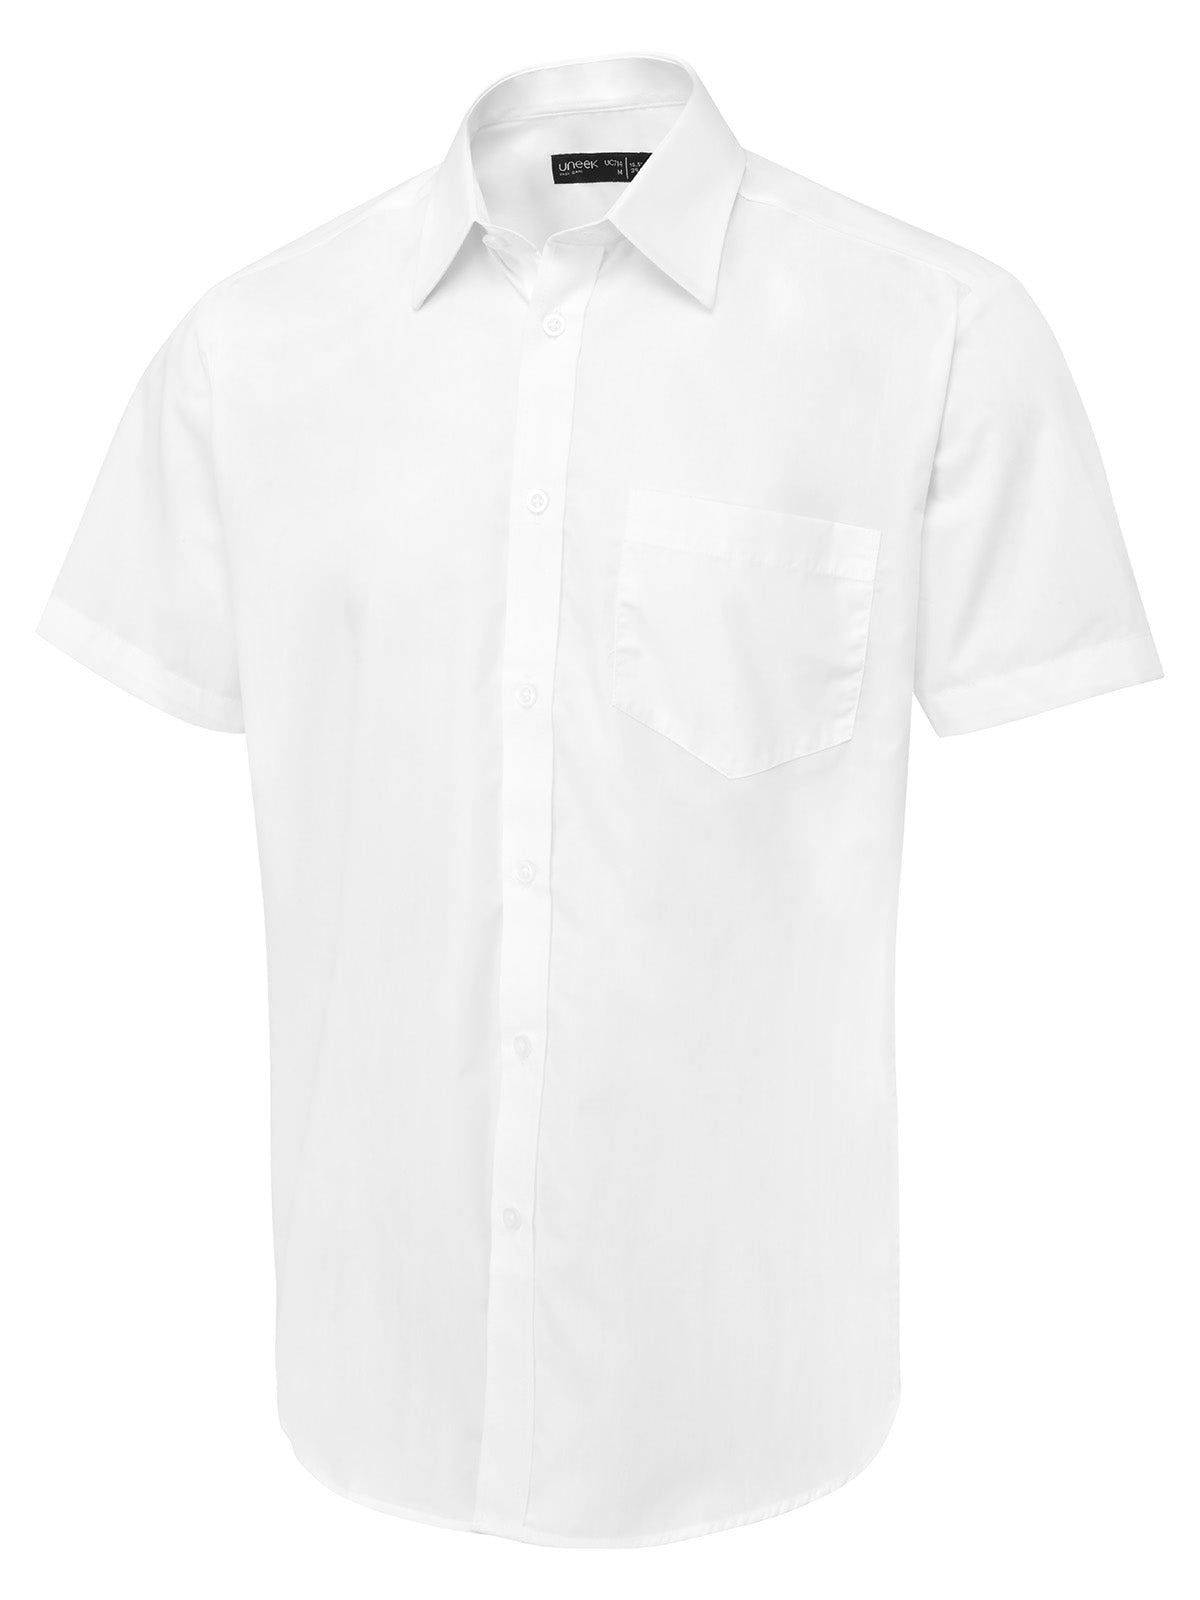 mens_short_sleeve_poplin_shirt_white